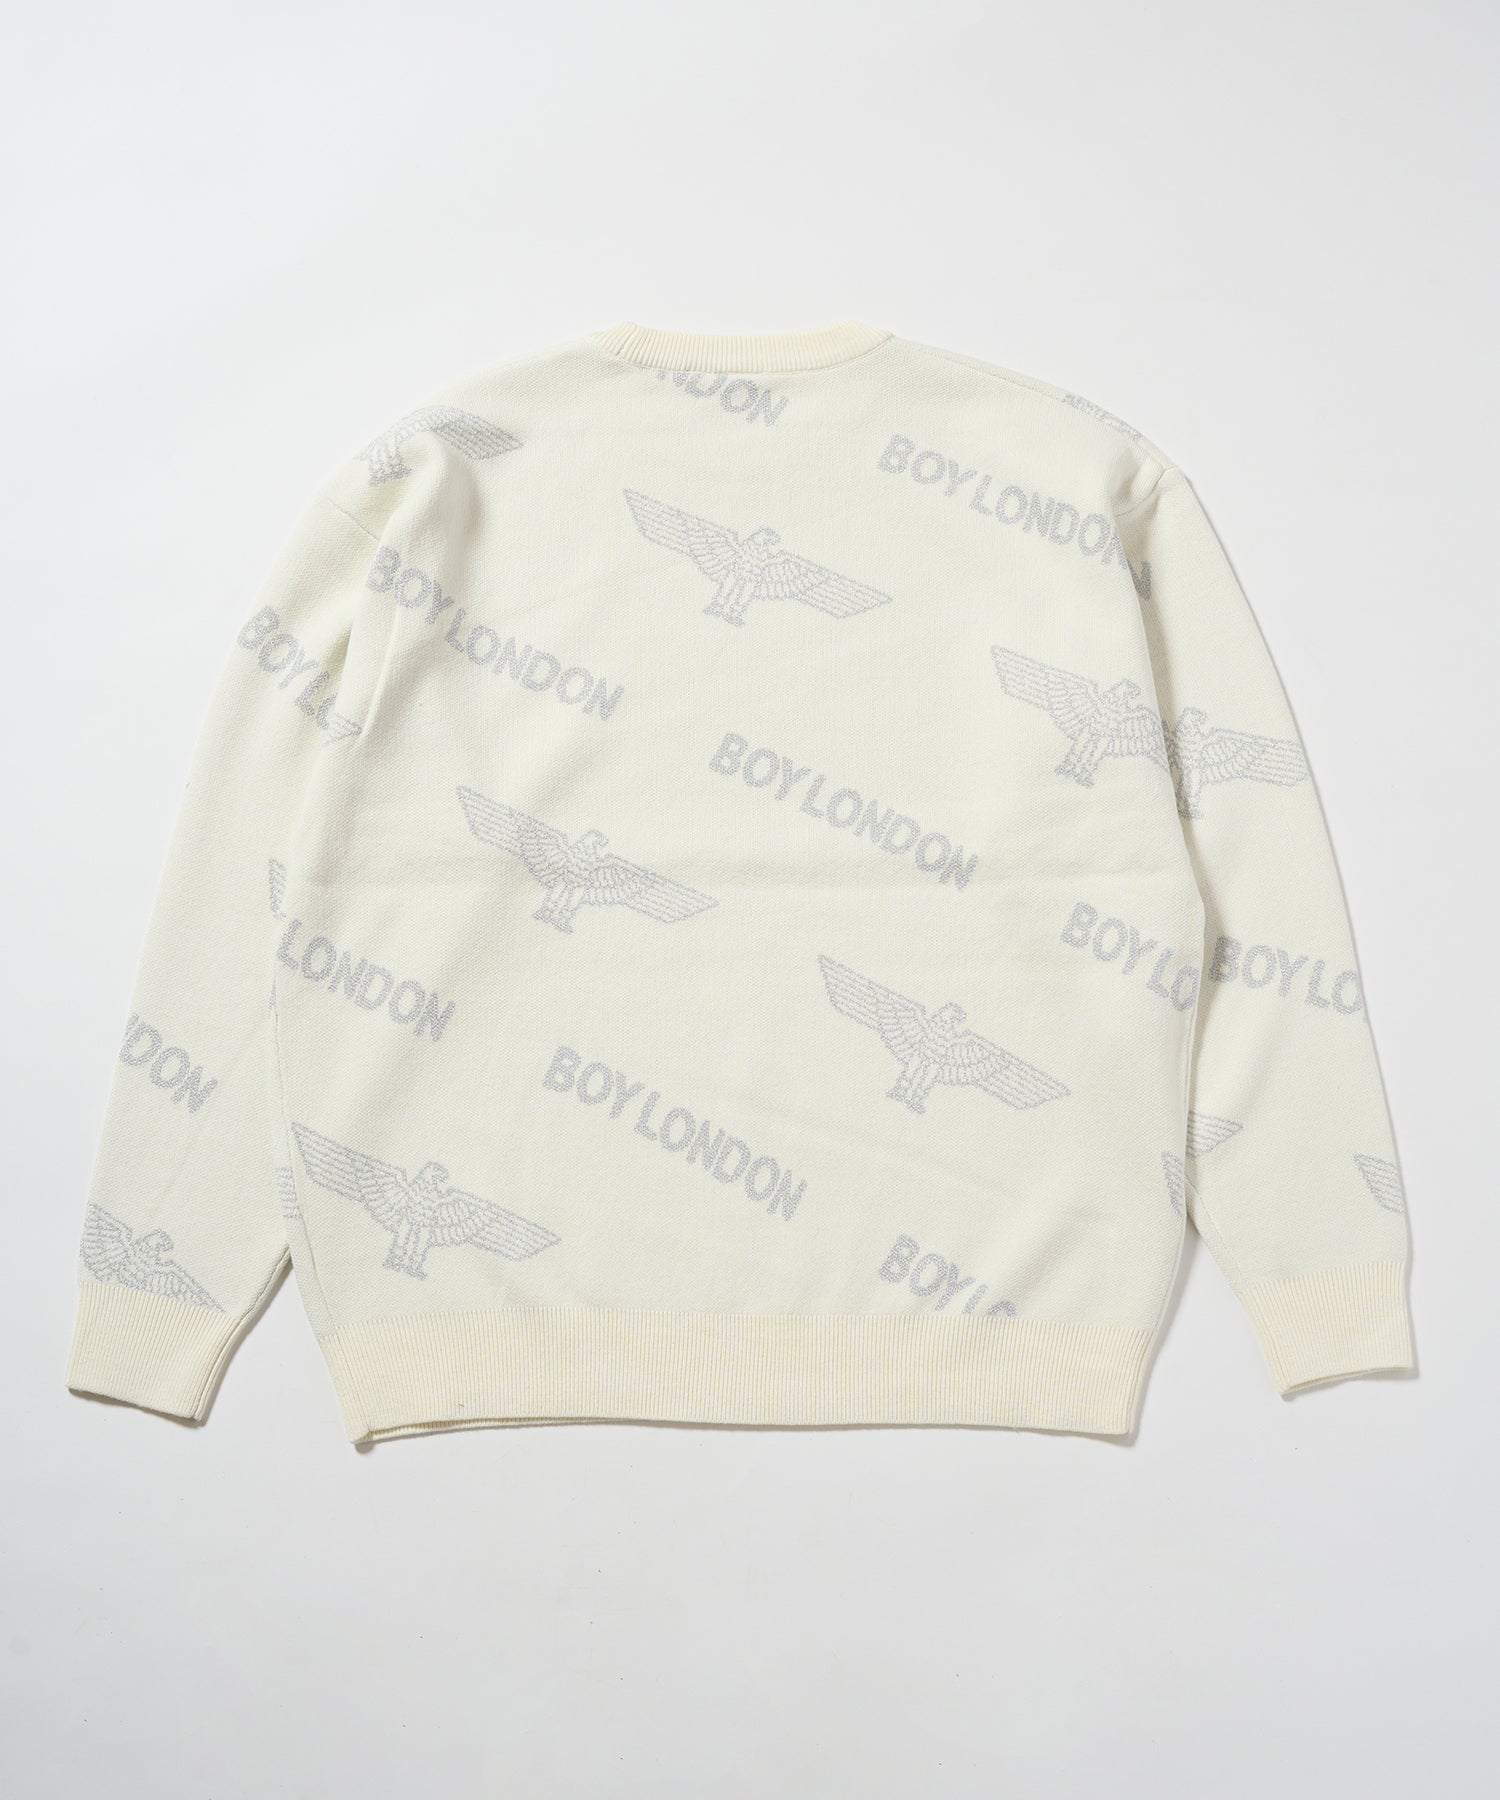 Silver LOGO Jacquard Knit Pullover WHITE【B233N6090101】 – BOY LONDON